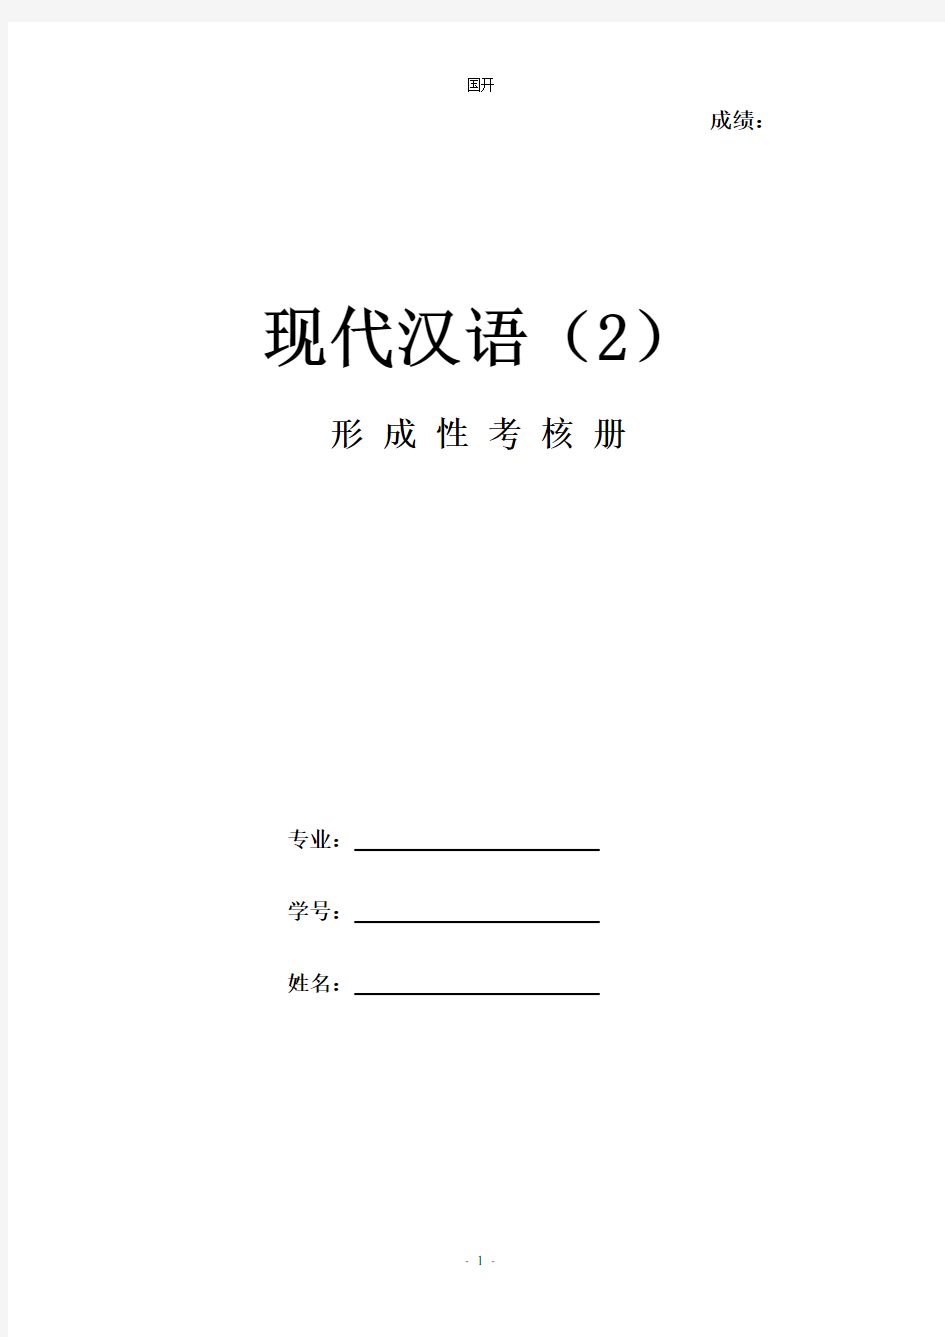 《现代汉语2》作业形考网考形成性考核册-国家开放大学电大